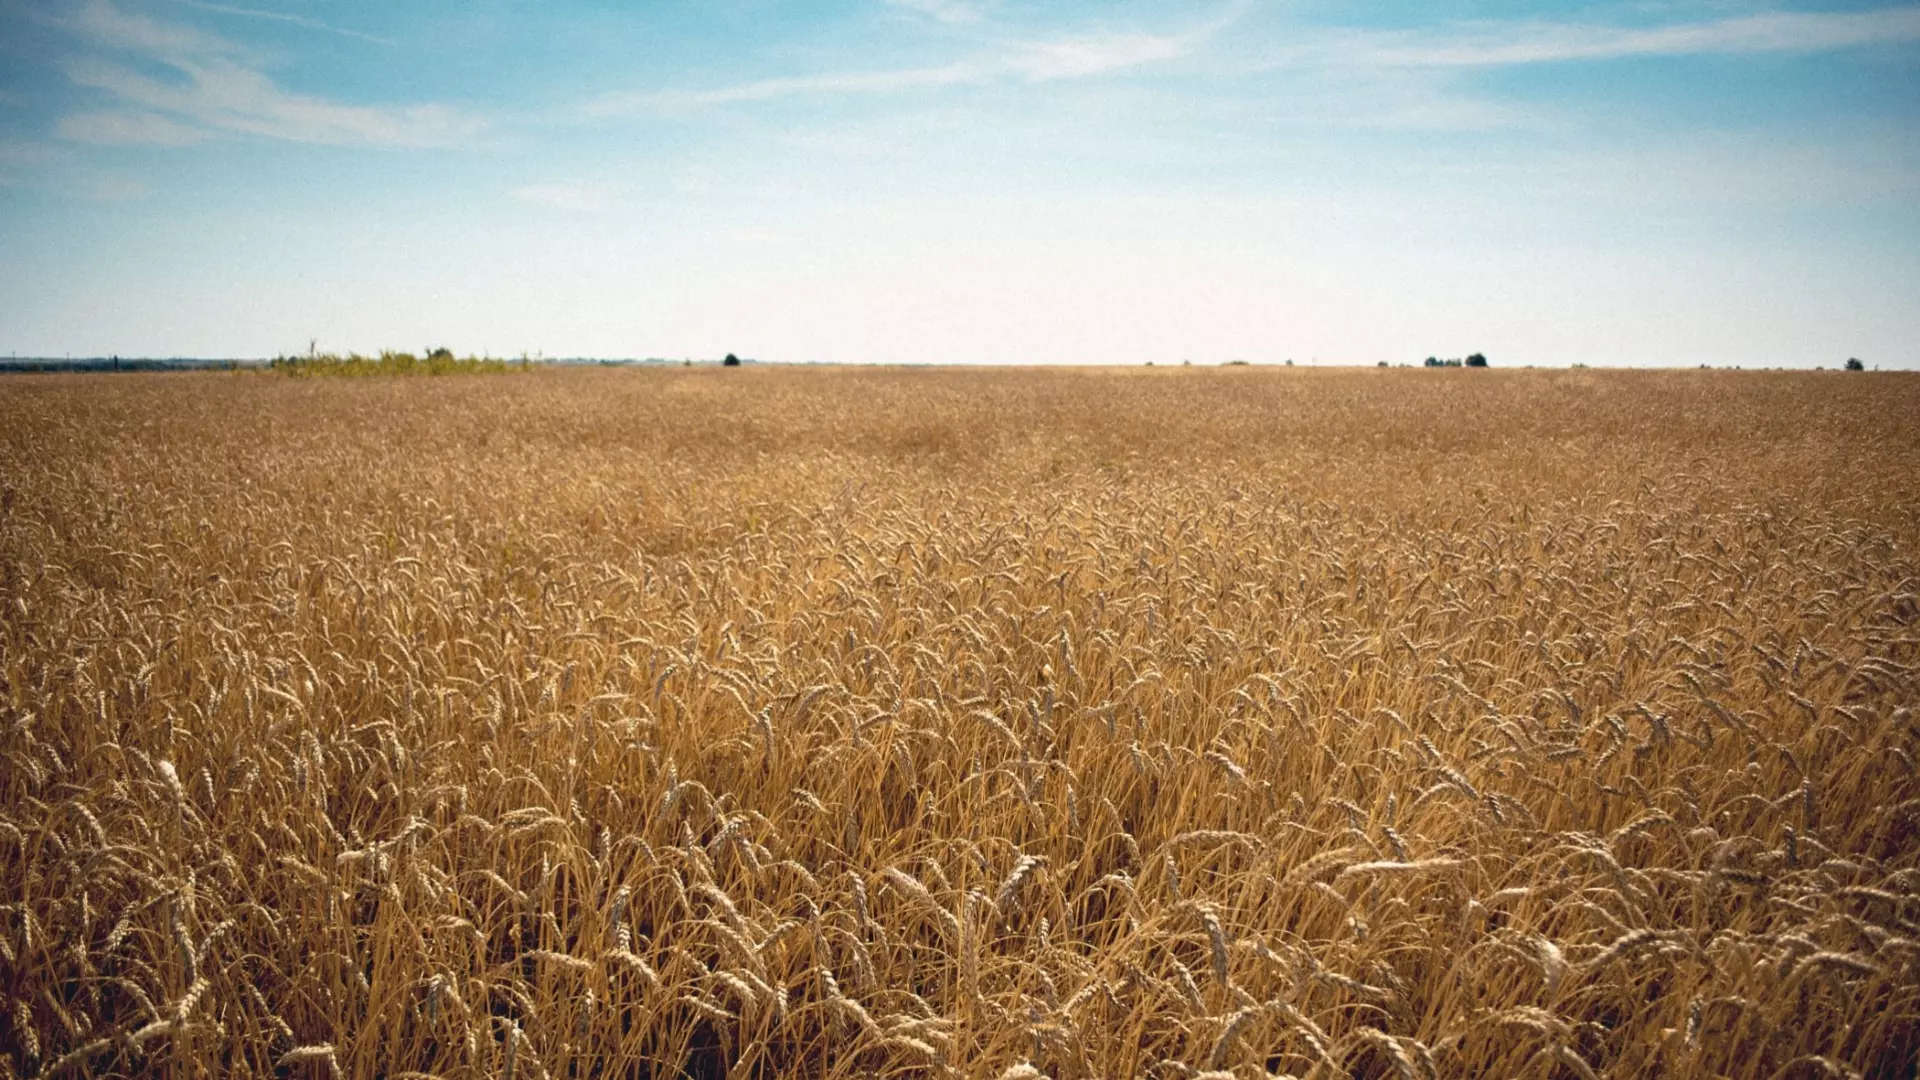 Аналитики рассказали об ожидаемом росте цен на пшеницу на мировом рынке